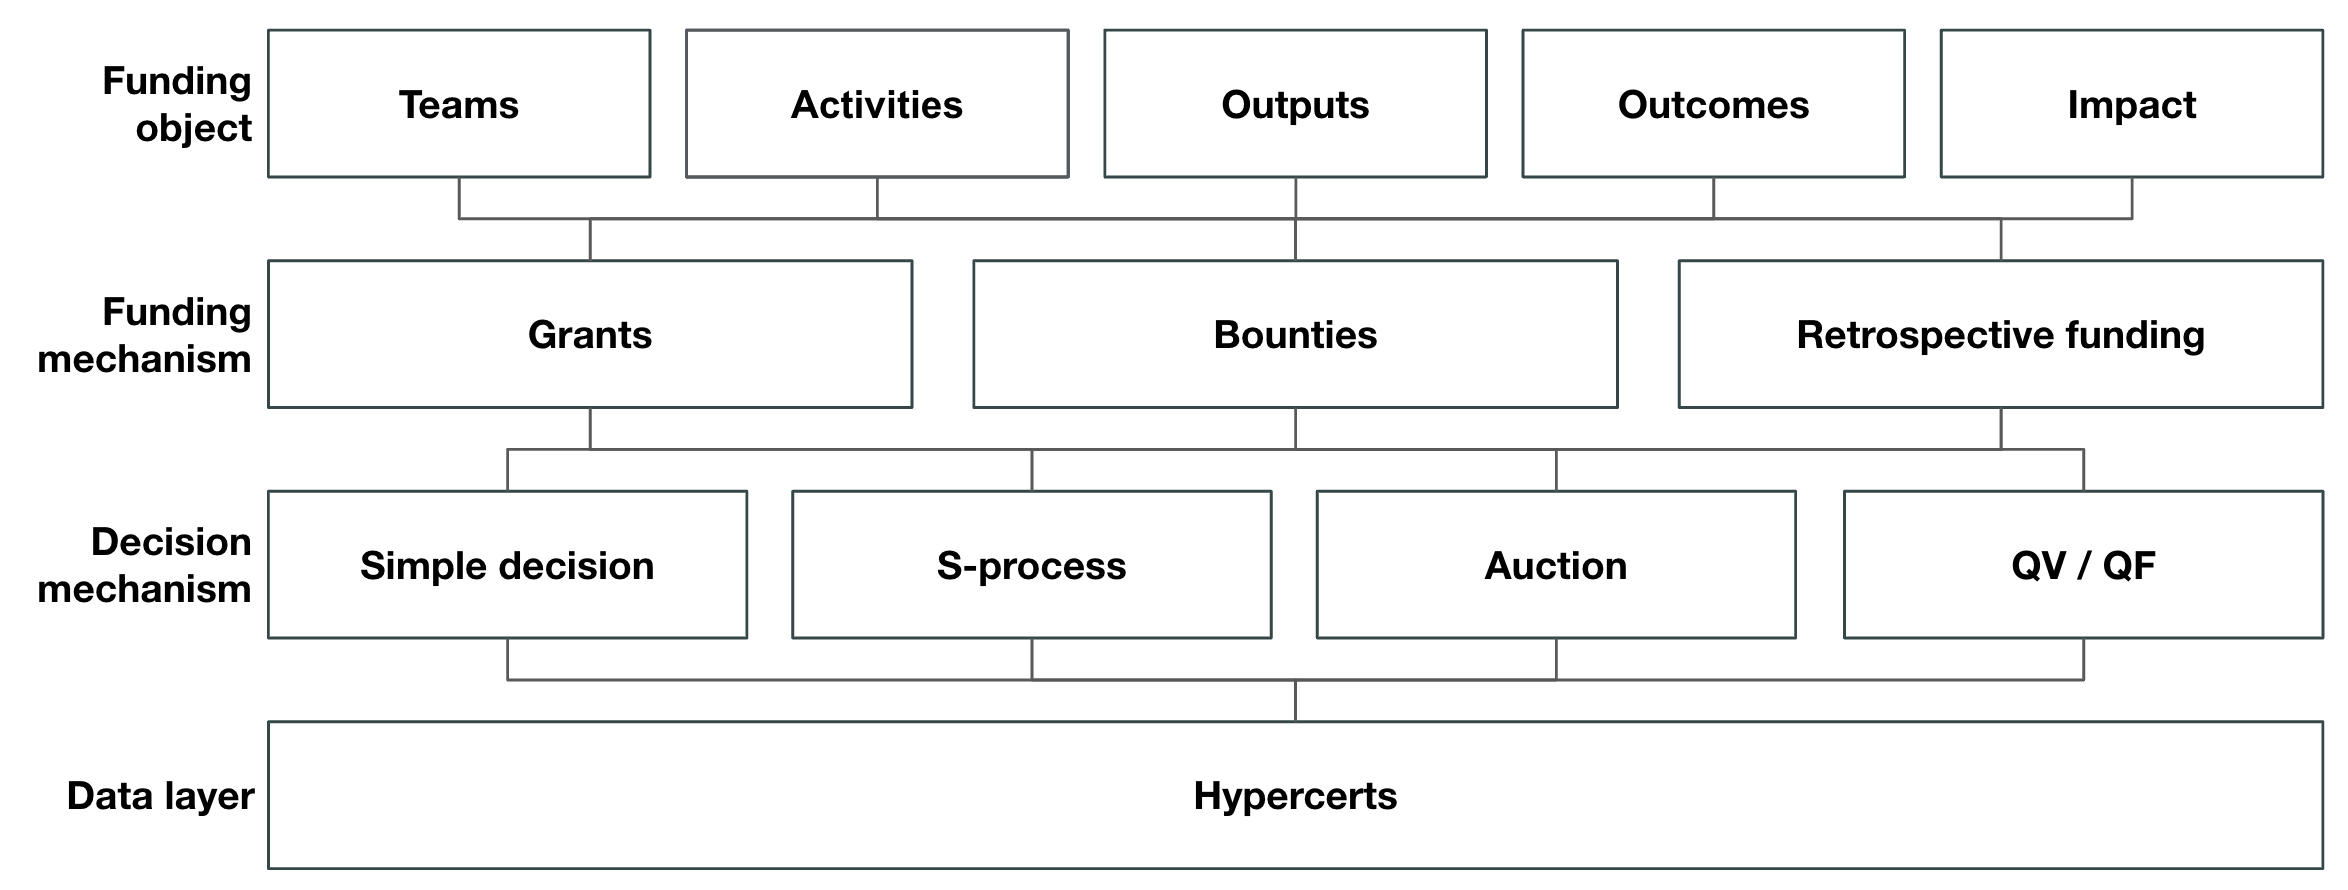 Hypercerts as a data layer for an IFS